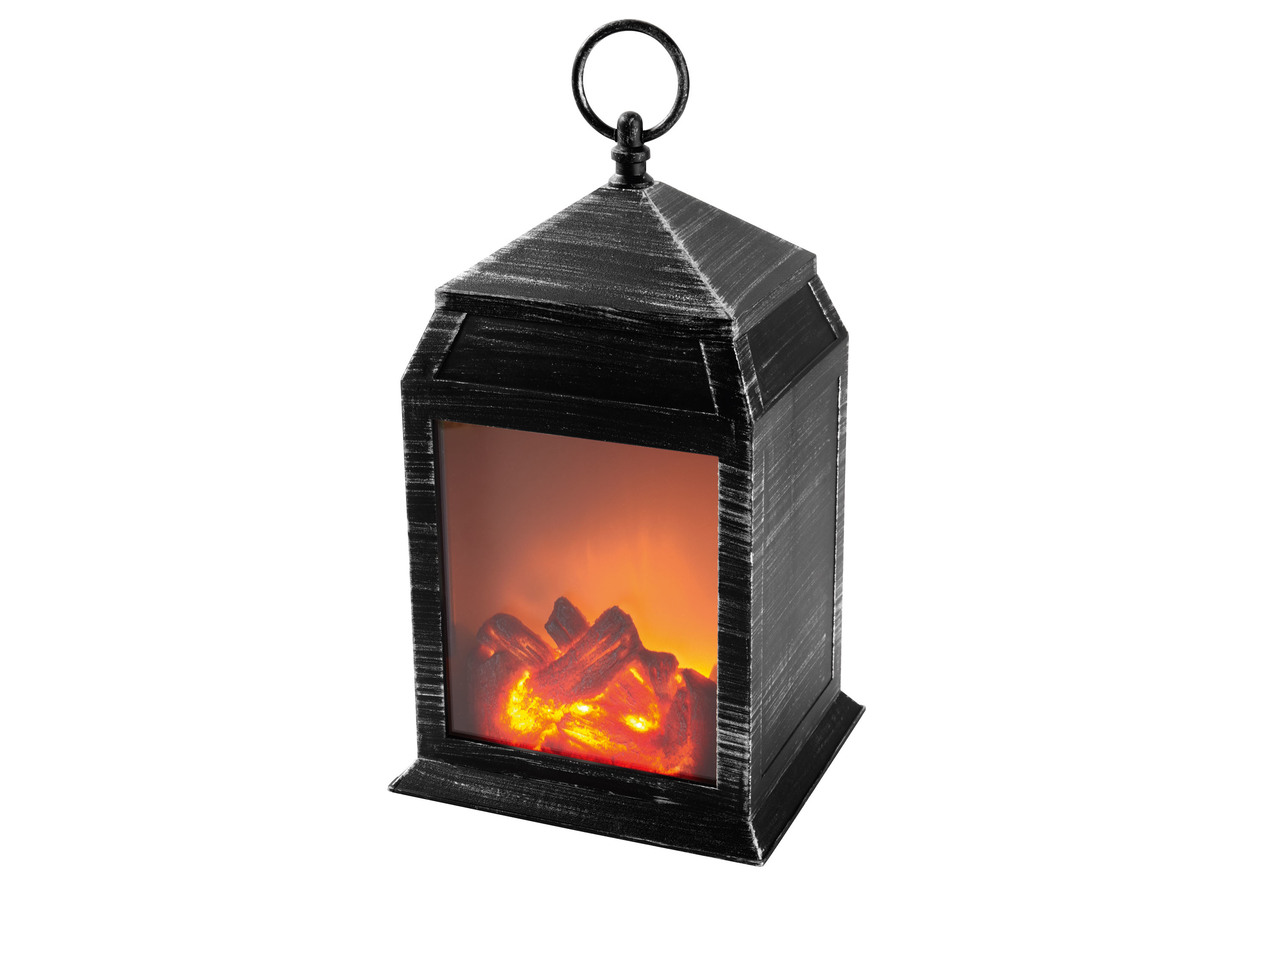 MELINERA LED Fireplace Style Lantern